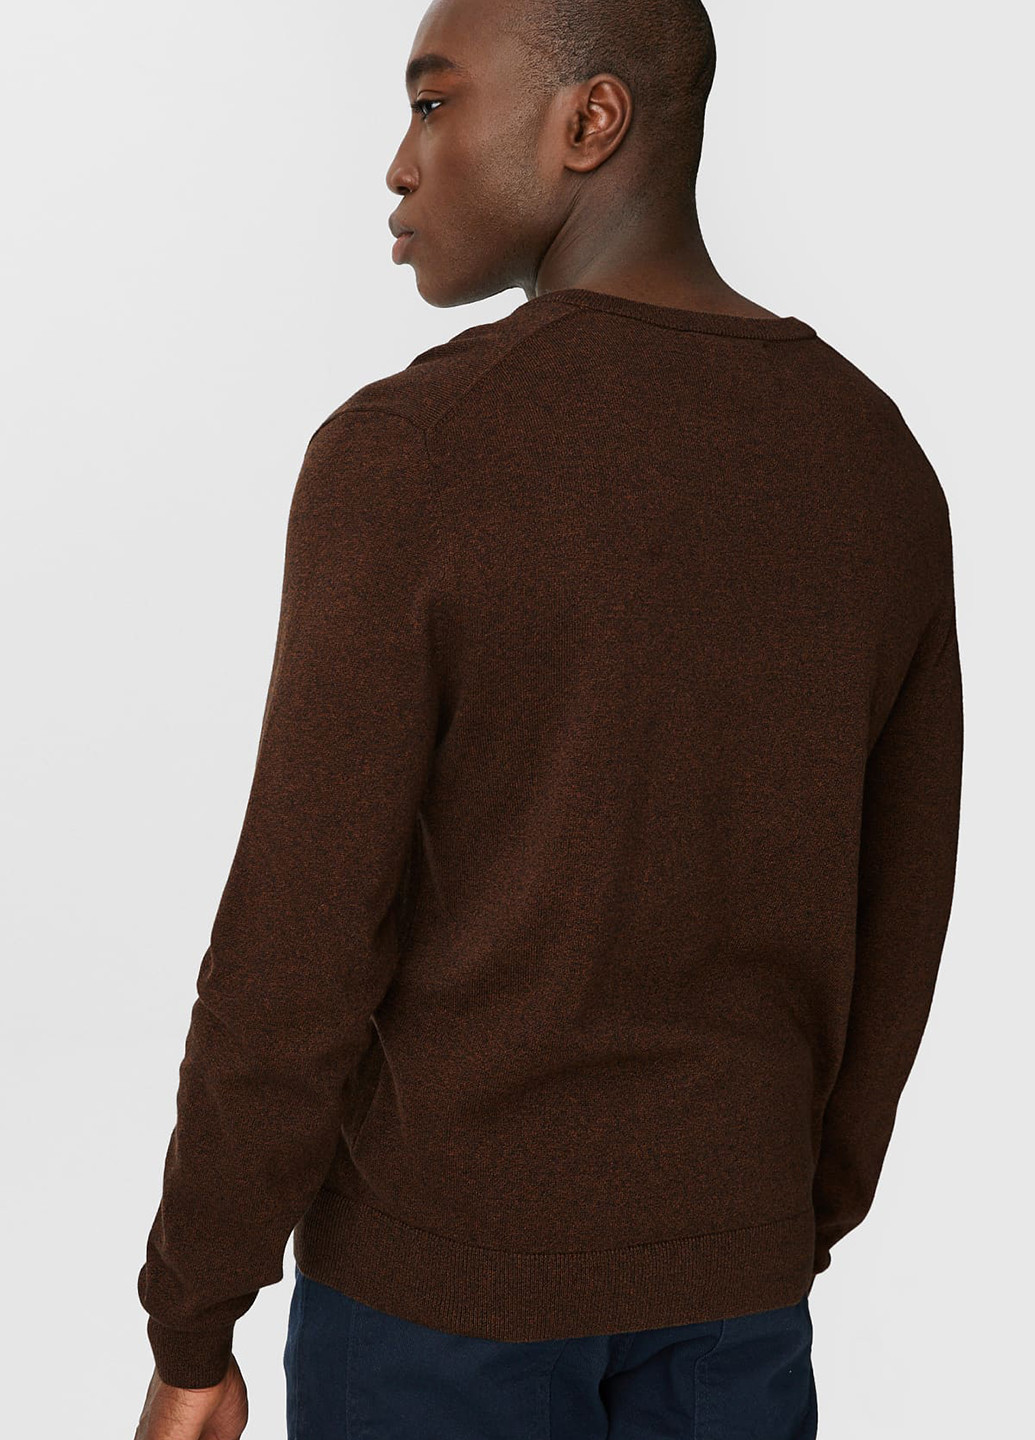 Темно-коричневый демисезонный пуловер пуловер C&A